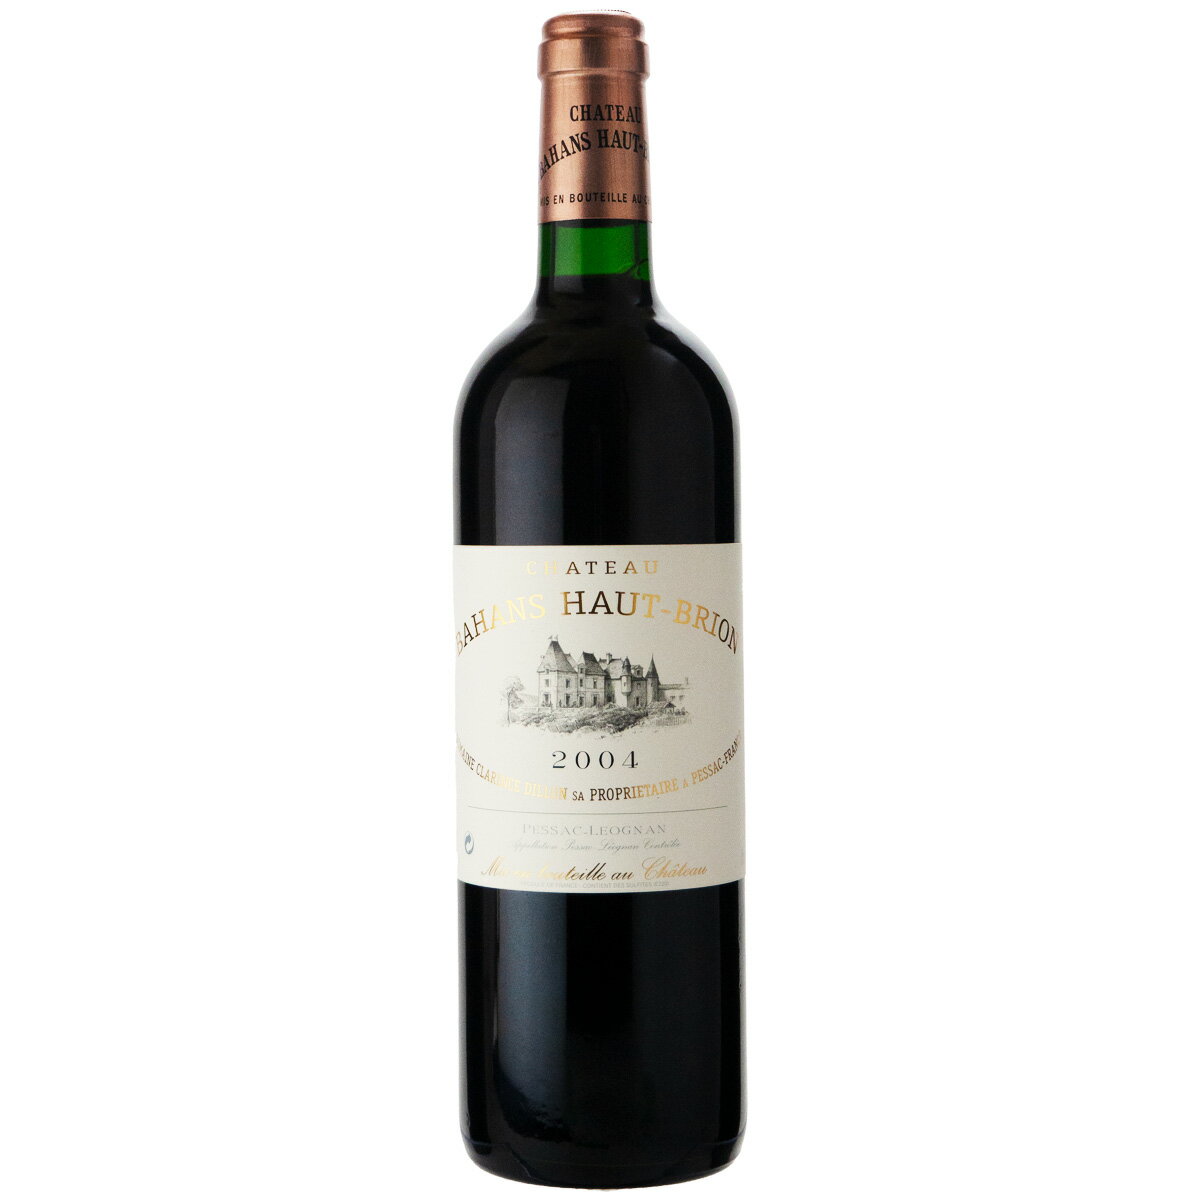 シャトー オー ブリオン シャトー バーン オー ブリオン 2004 750ml 赤ワイン フランス 格付け第1級セカンド (x10-618)